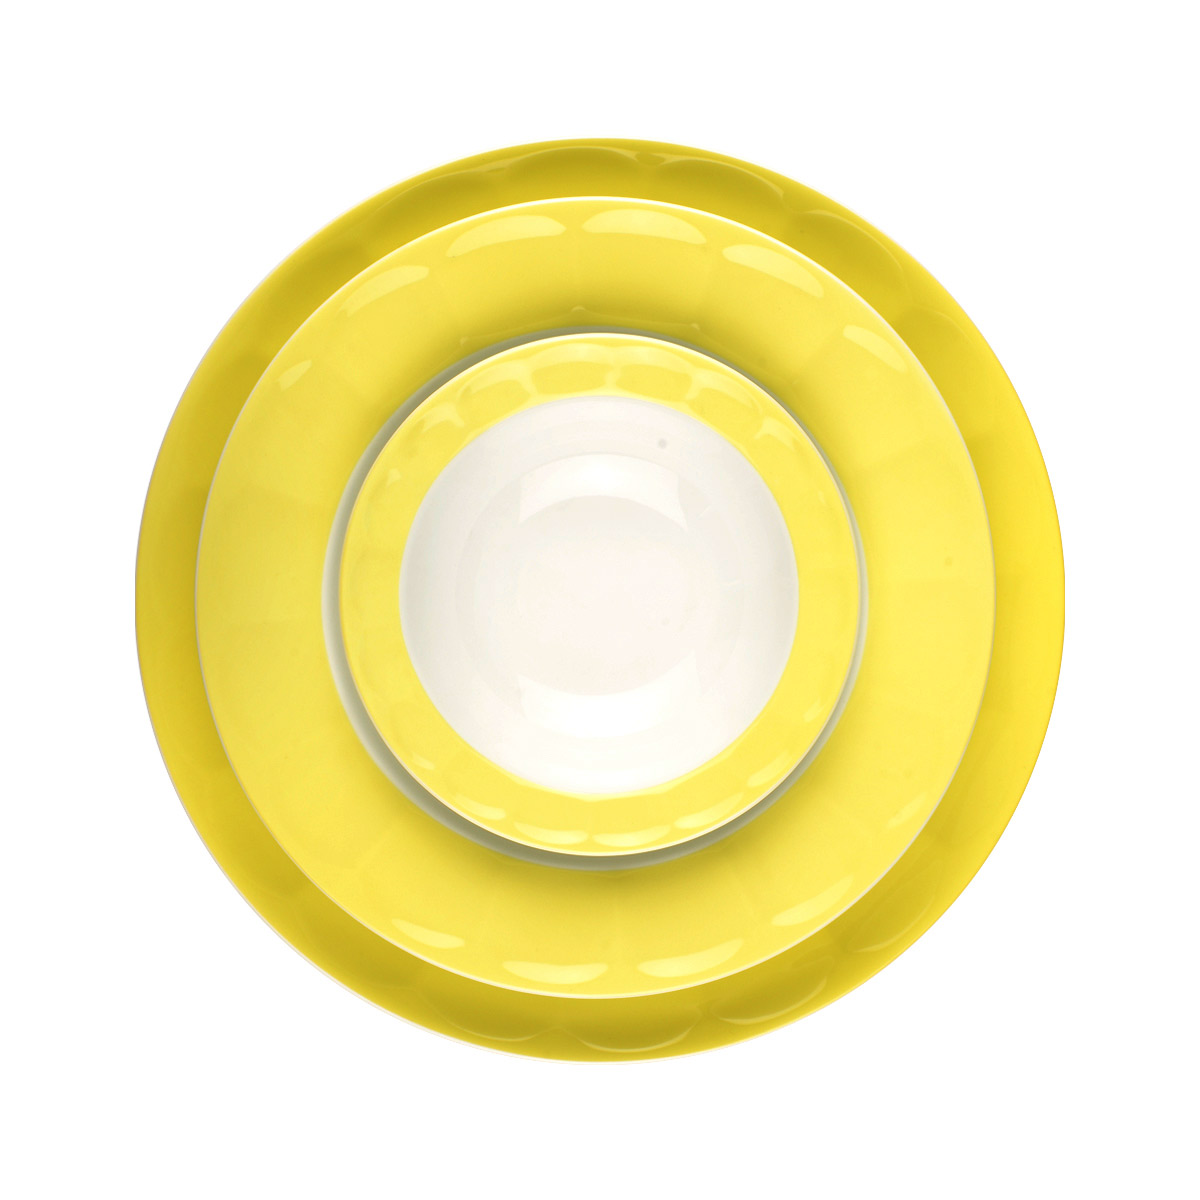 سرویس غذاخوری 29 پارچه زرین سری نئوکلاسیک مدل پاستل (چند رنگ)